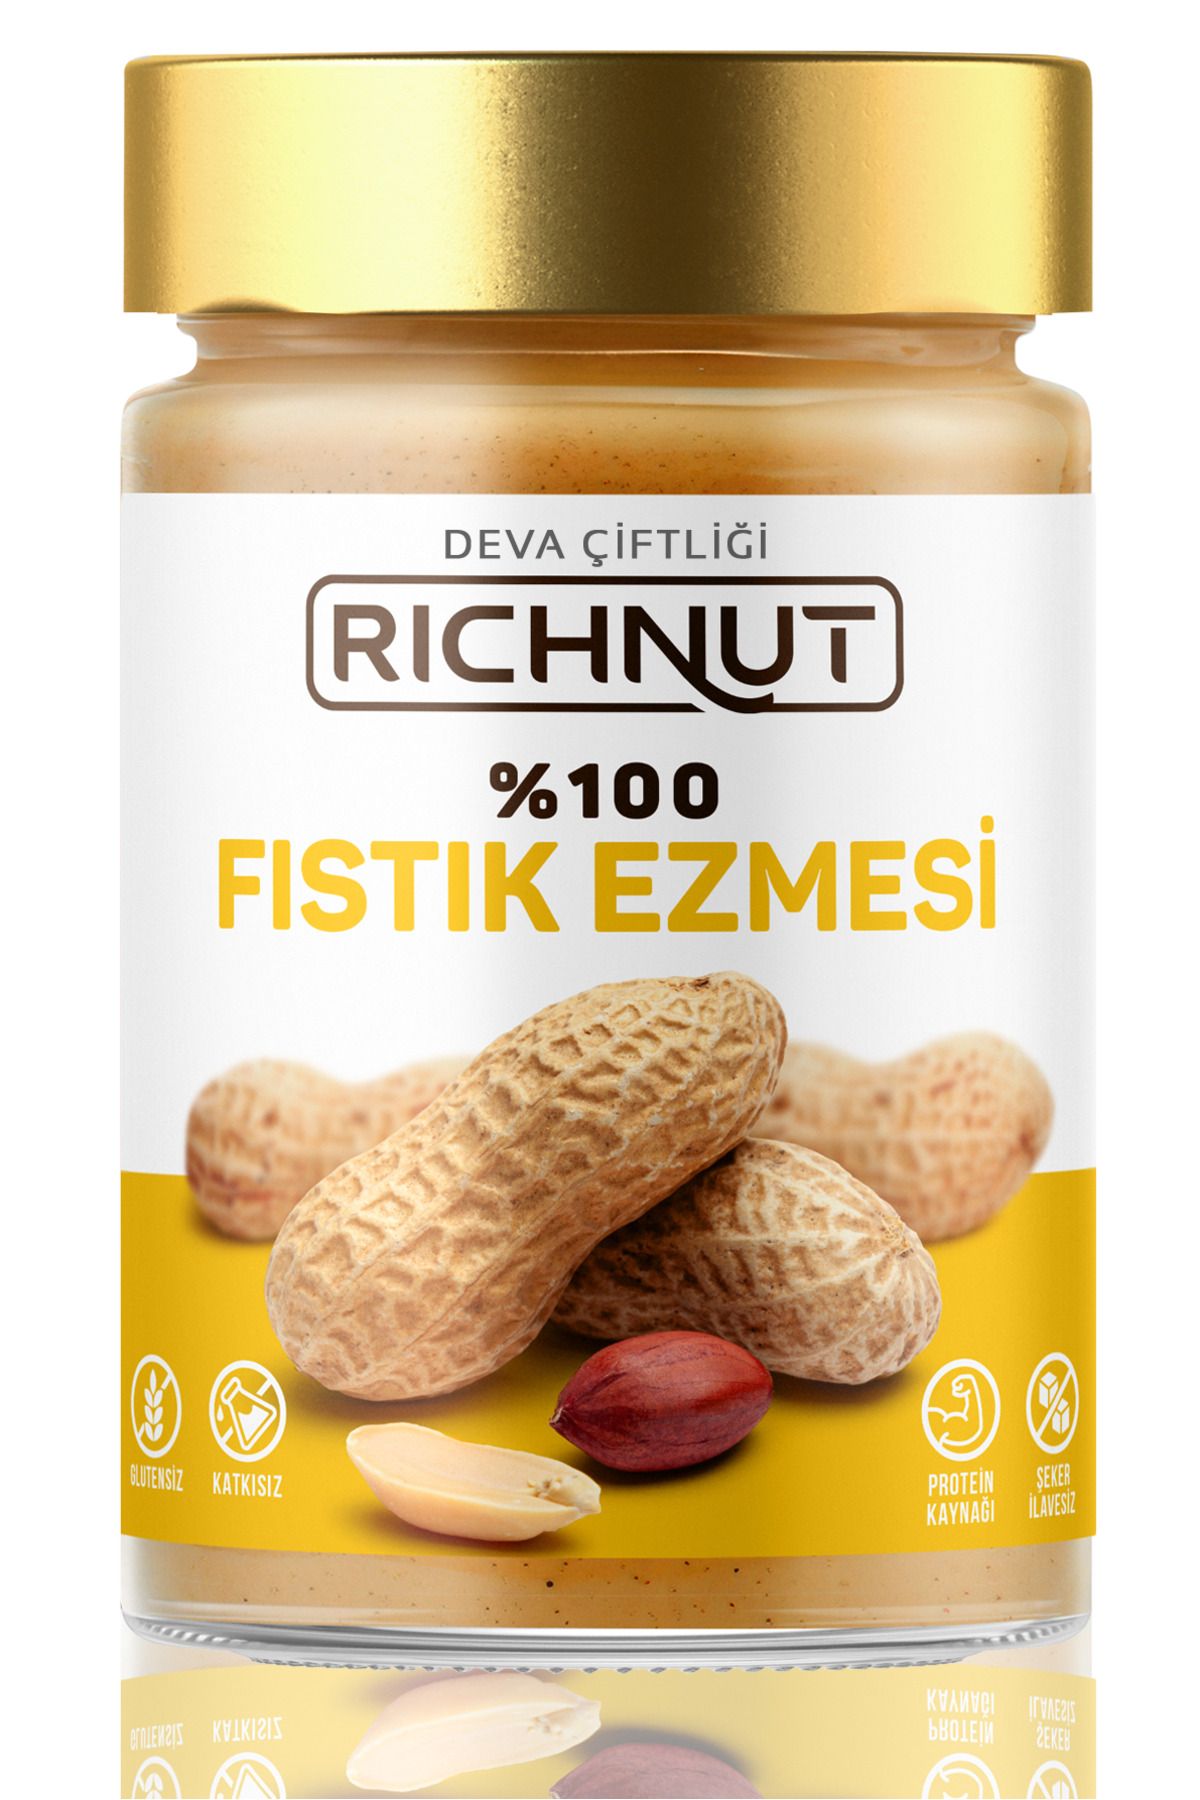 FISTIK EZMESİ 1000g – House Of Supplements